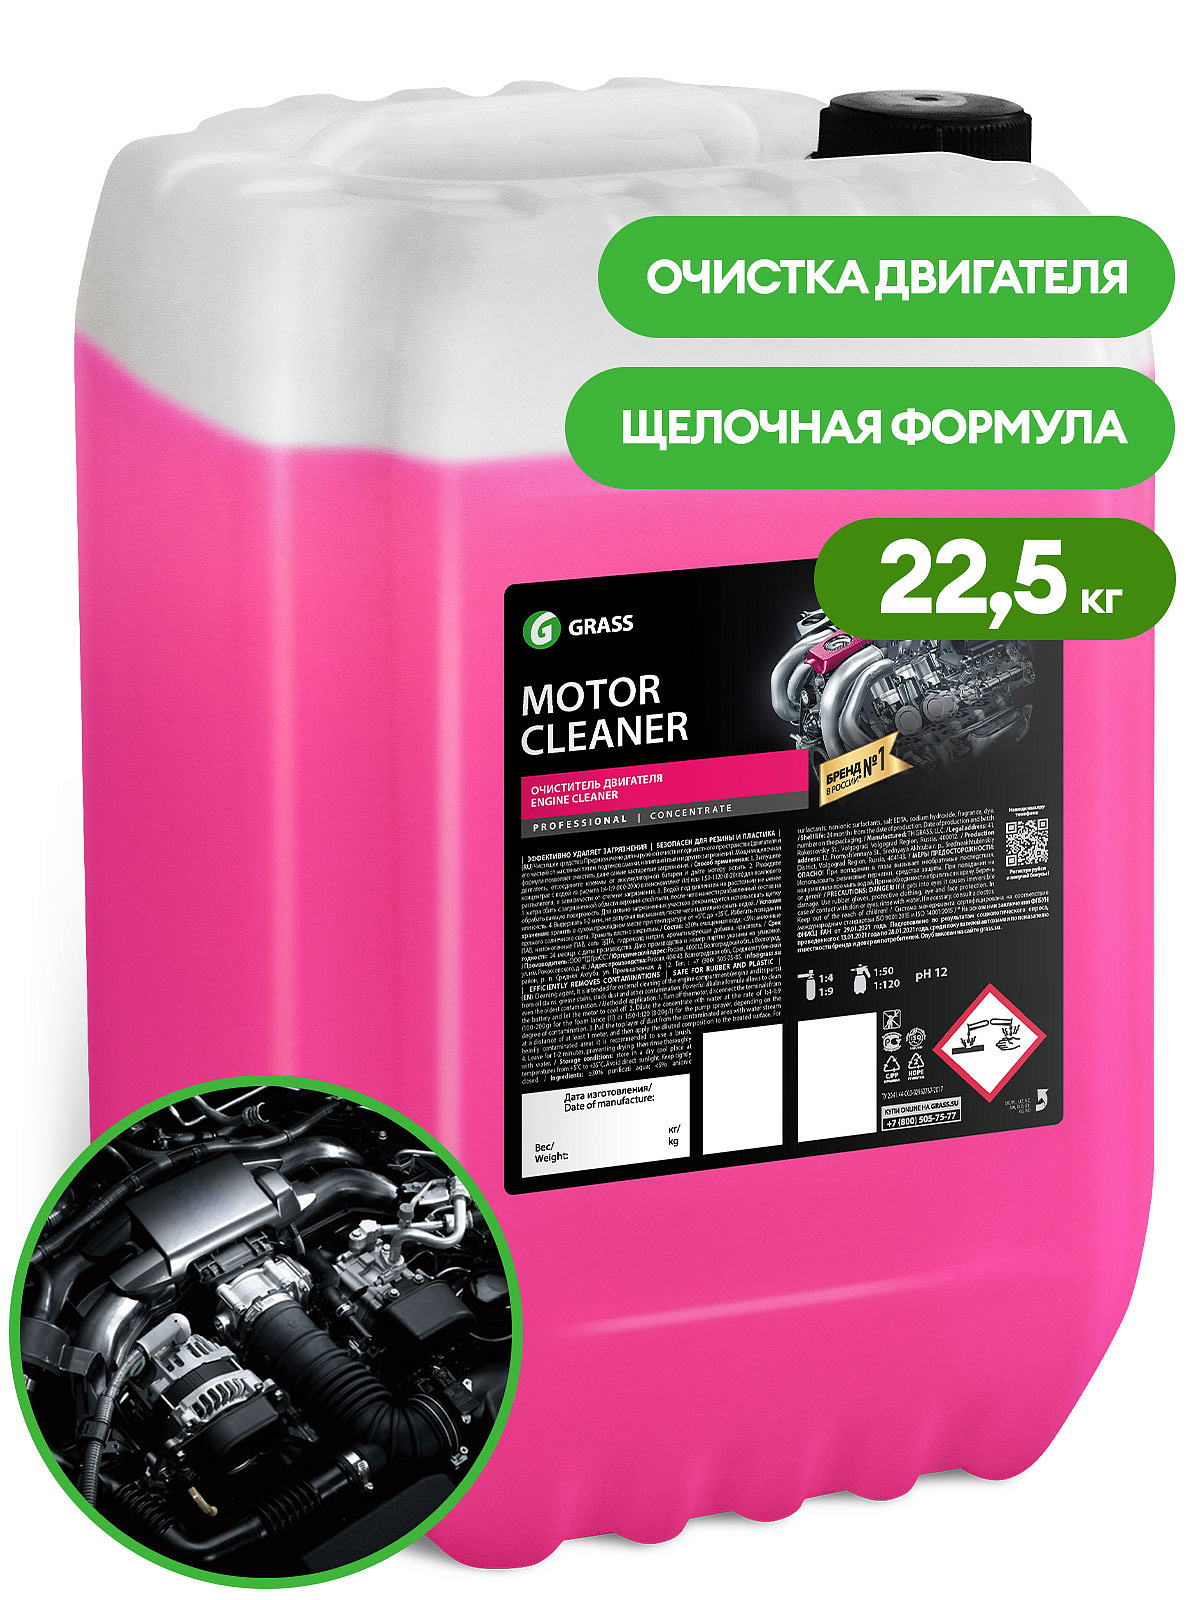 Очиститель двигателя Motor Cleaner 22,5 кг GRASS Grass  110508_0